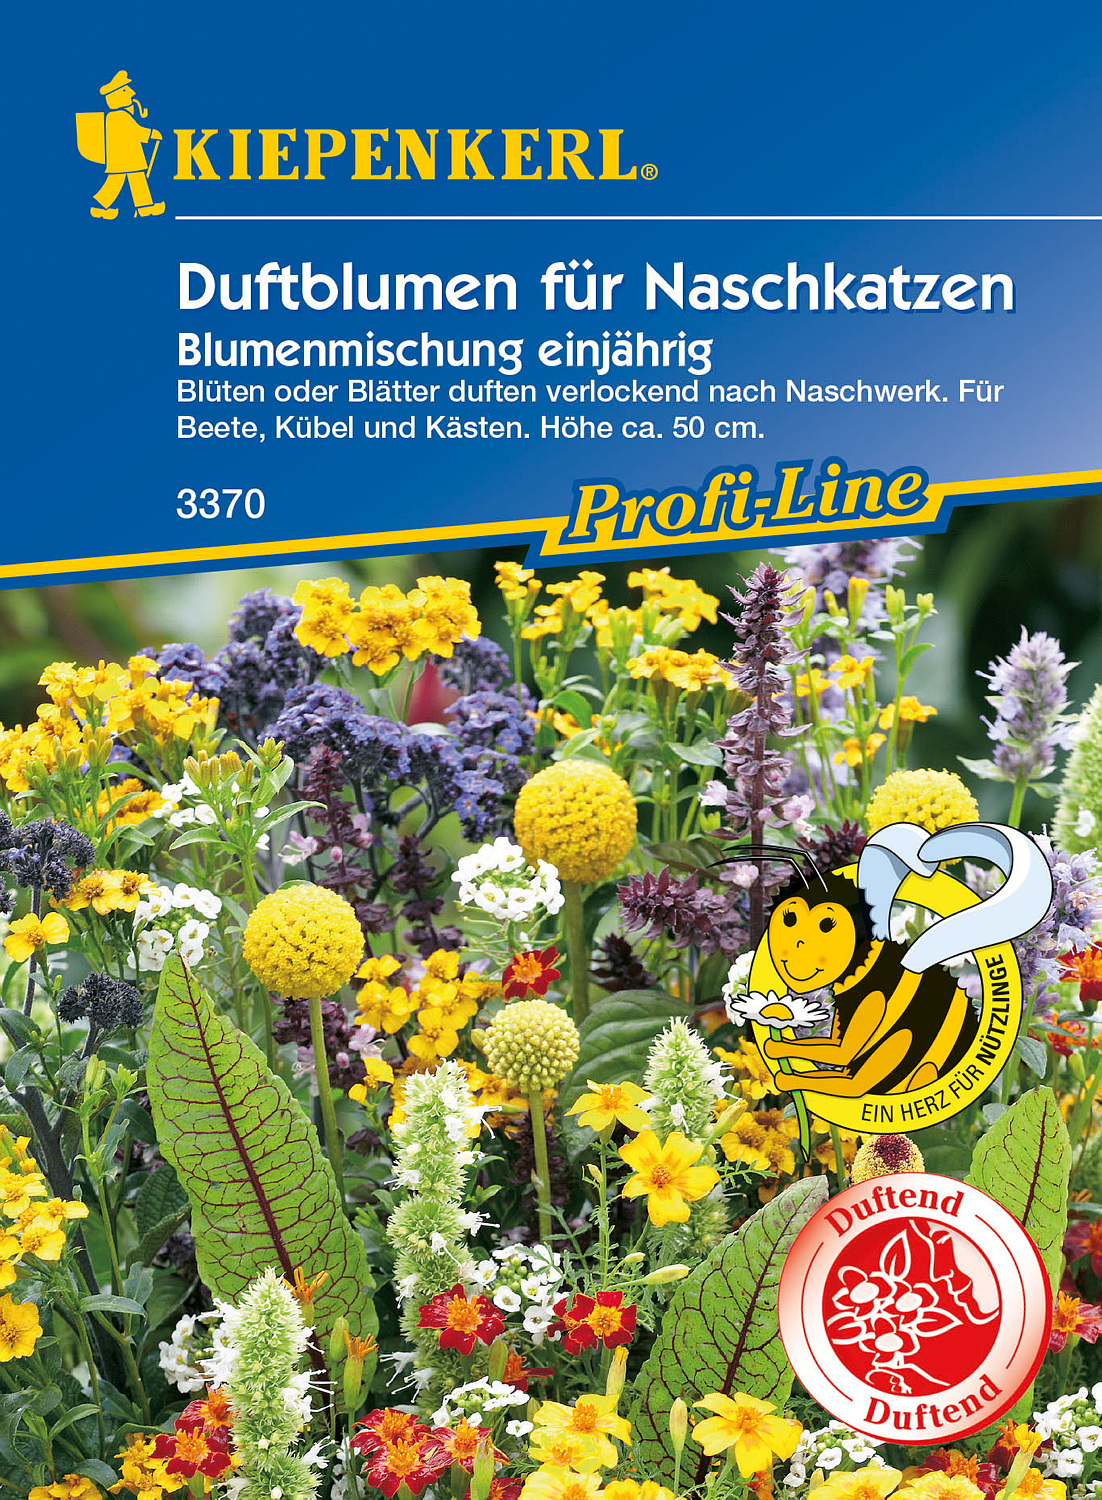 Kiepenkerl® Profi-Line Blumenmischung Duftblumen für Naschkatzen